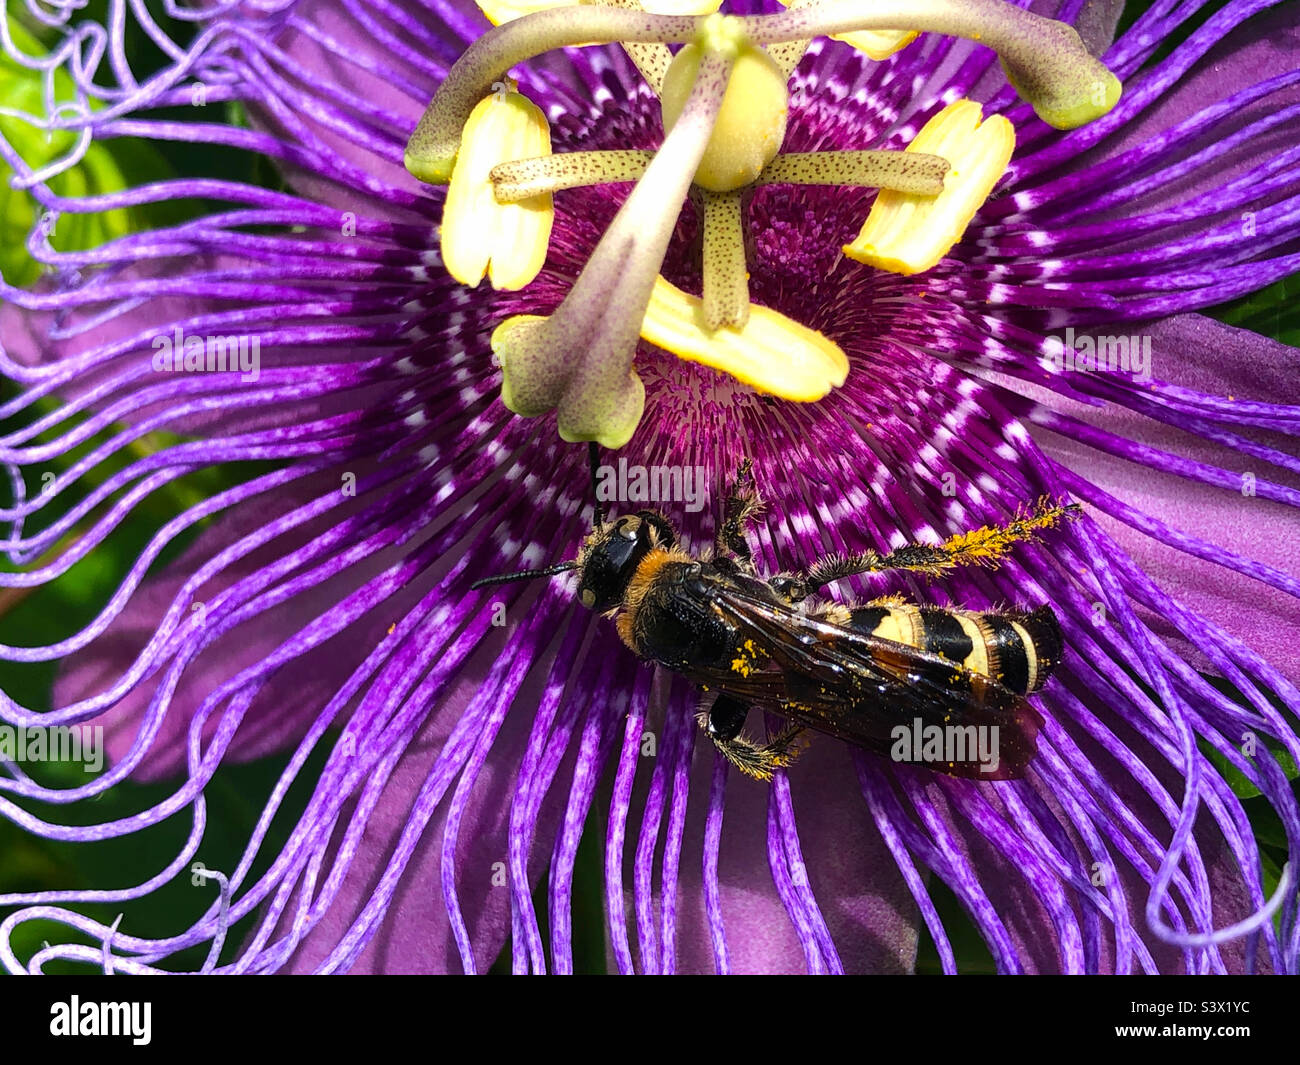 Una vespa scioliidea a tre bande (Dielis trifasciata) ricoperta di polline da un fiore di passione in un cortile della Florida. Il maschio ha quattro bande, quindi questo è un maschio. Foto Stock